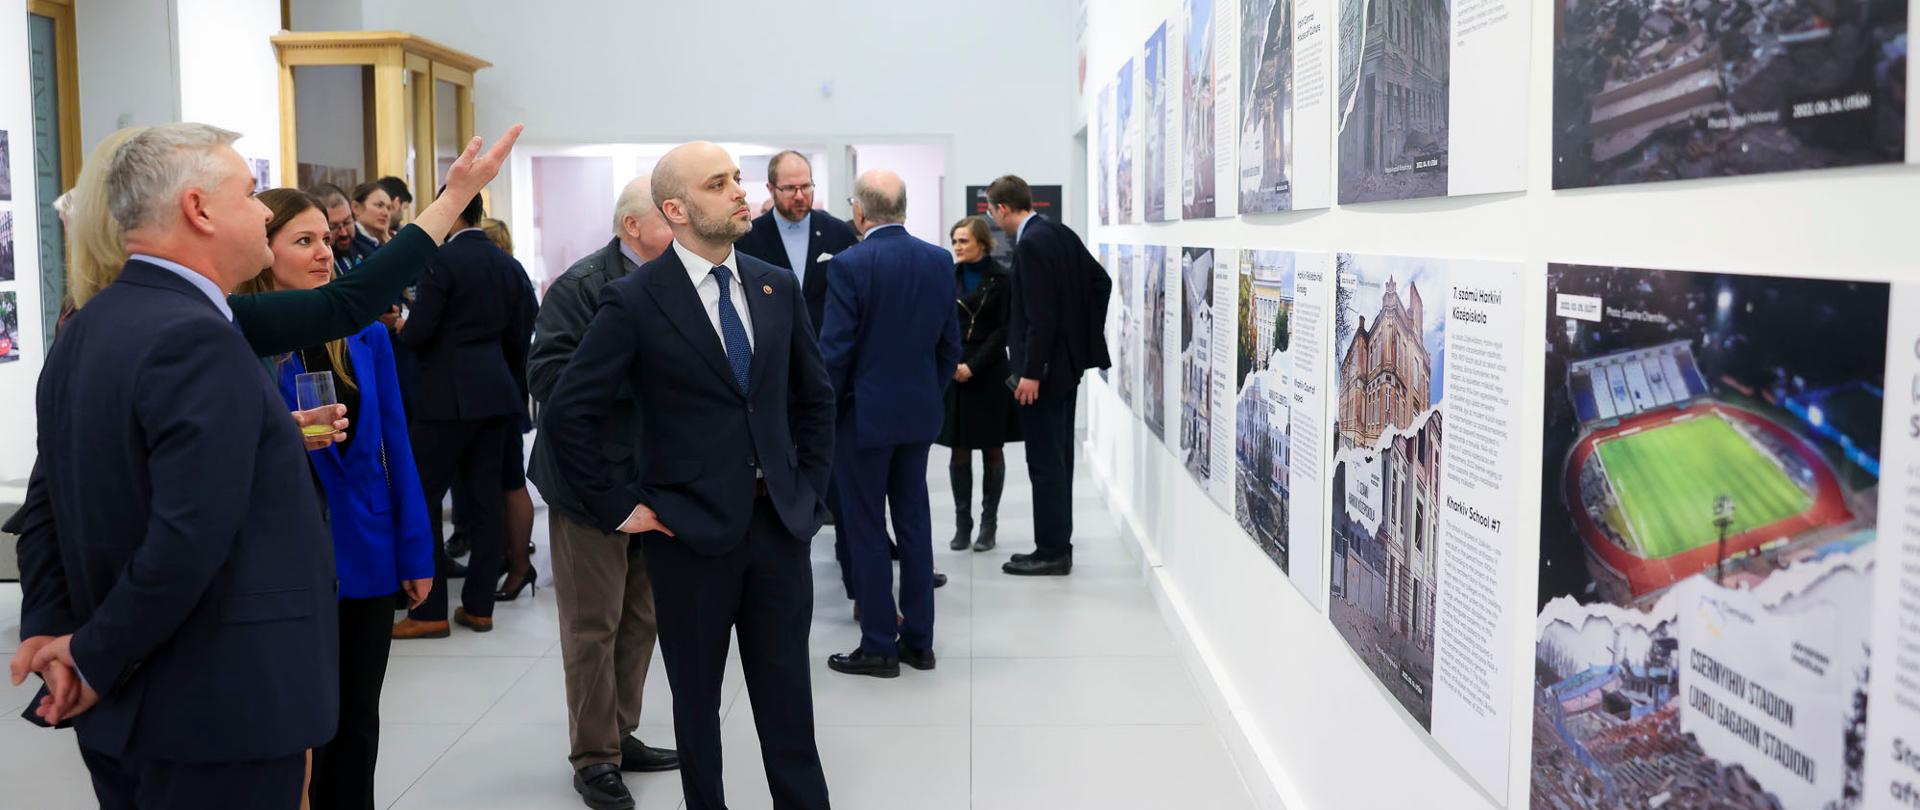 Otwarcie wystaw "Teraz '44" i "Pocztówki z Ukrainy" w Instytucie Polskim w Budapeszcie (27 lutego 2023) - ambasador RP na Węgrzech Sebastian Kęciek